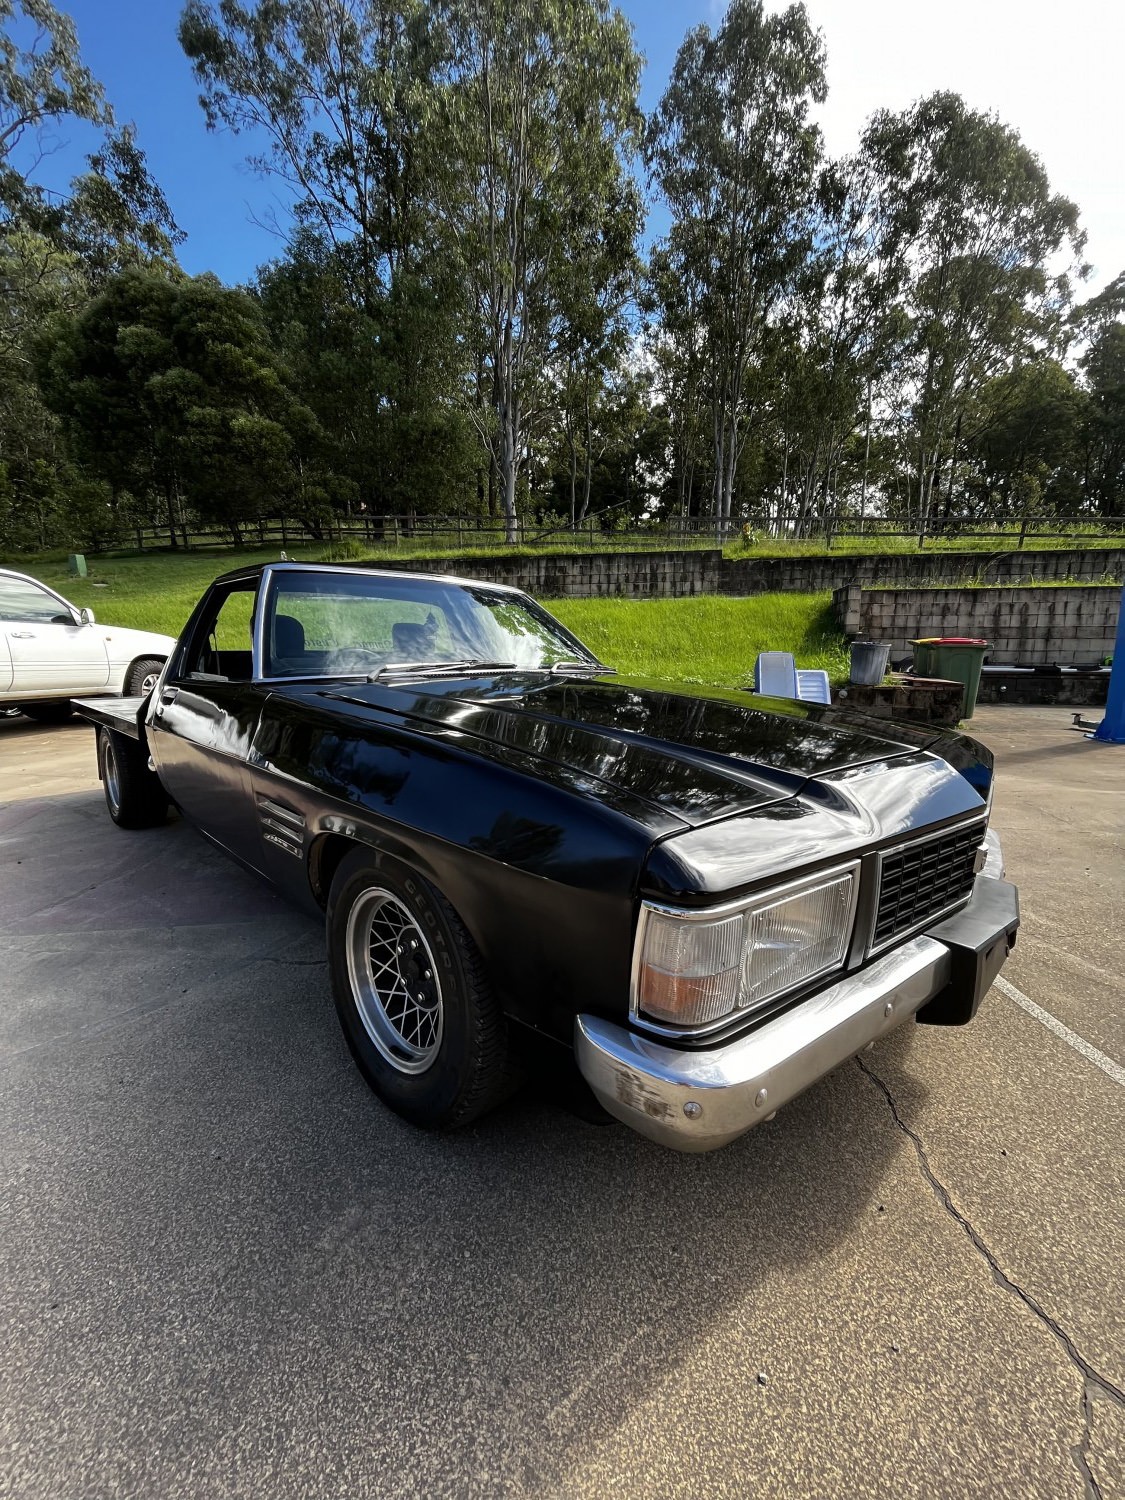 1982 Holden WB